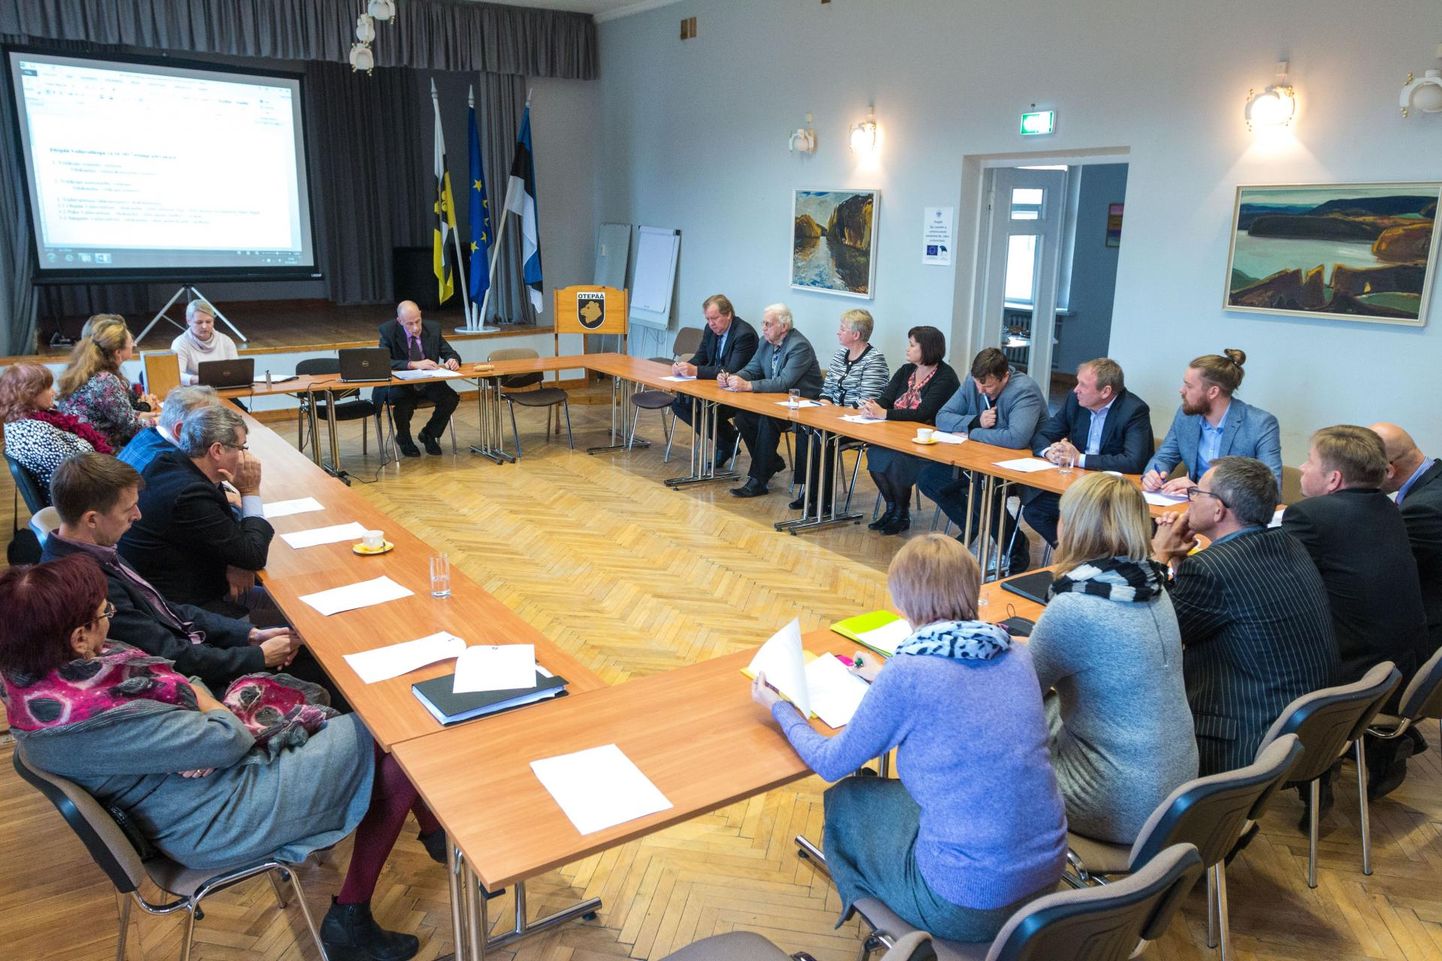 Pildil Otepää volikogu esimene istung 2017. aasta sügisel pärast valimisi, kui kõik olid kohal. Hiljutine viimane istung enne uusi valimisi aga lõpetati poole pealt, sest koalitsiooni lahkumise järel tööpostilt enam vajalikku kvoorumit kokku ei saadud.